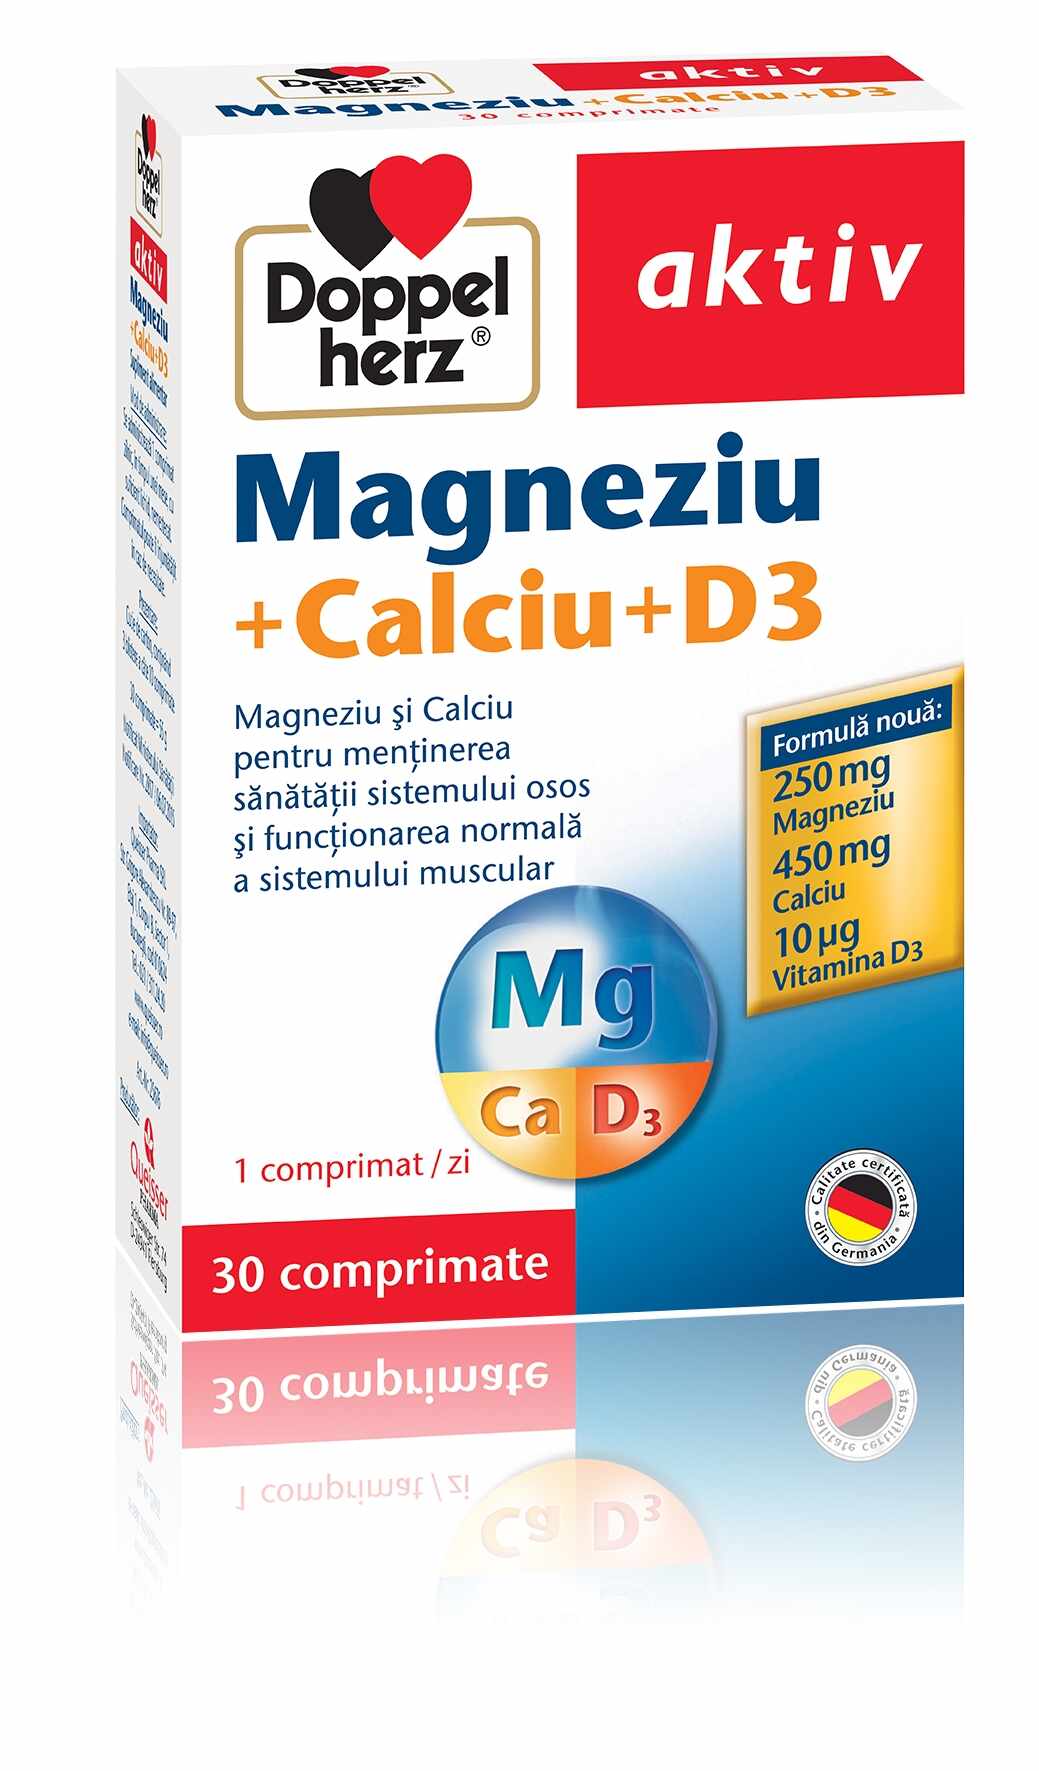 Doppelherz Aktiv Magneziu + Calciu + D3 30 Comprimate